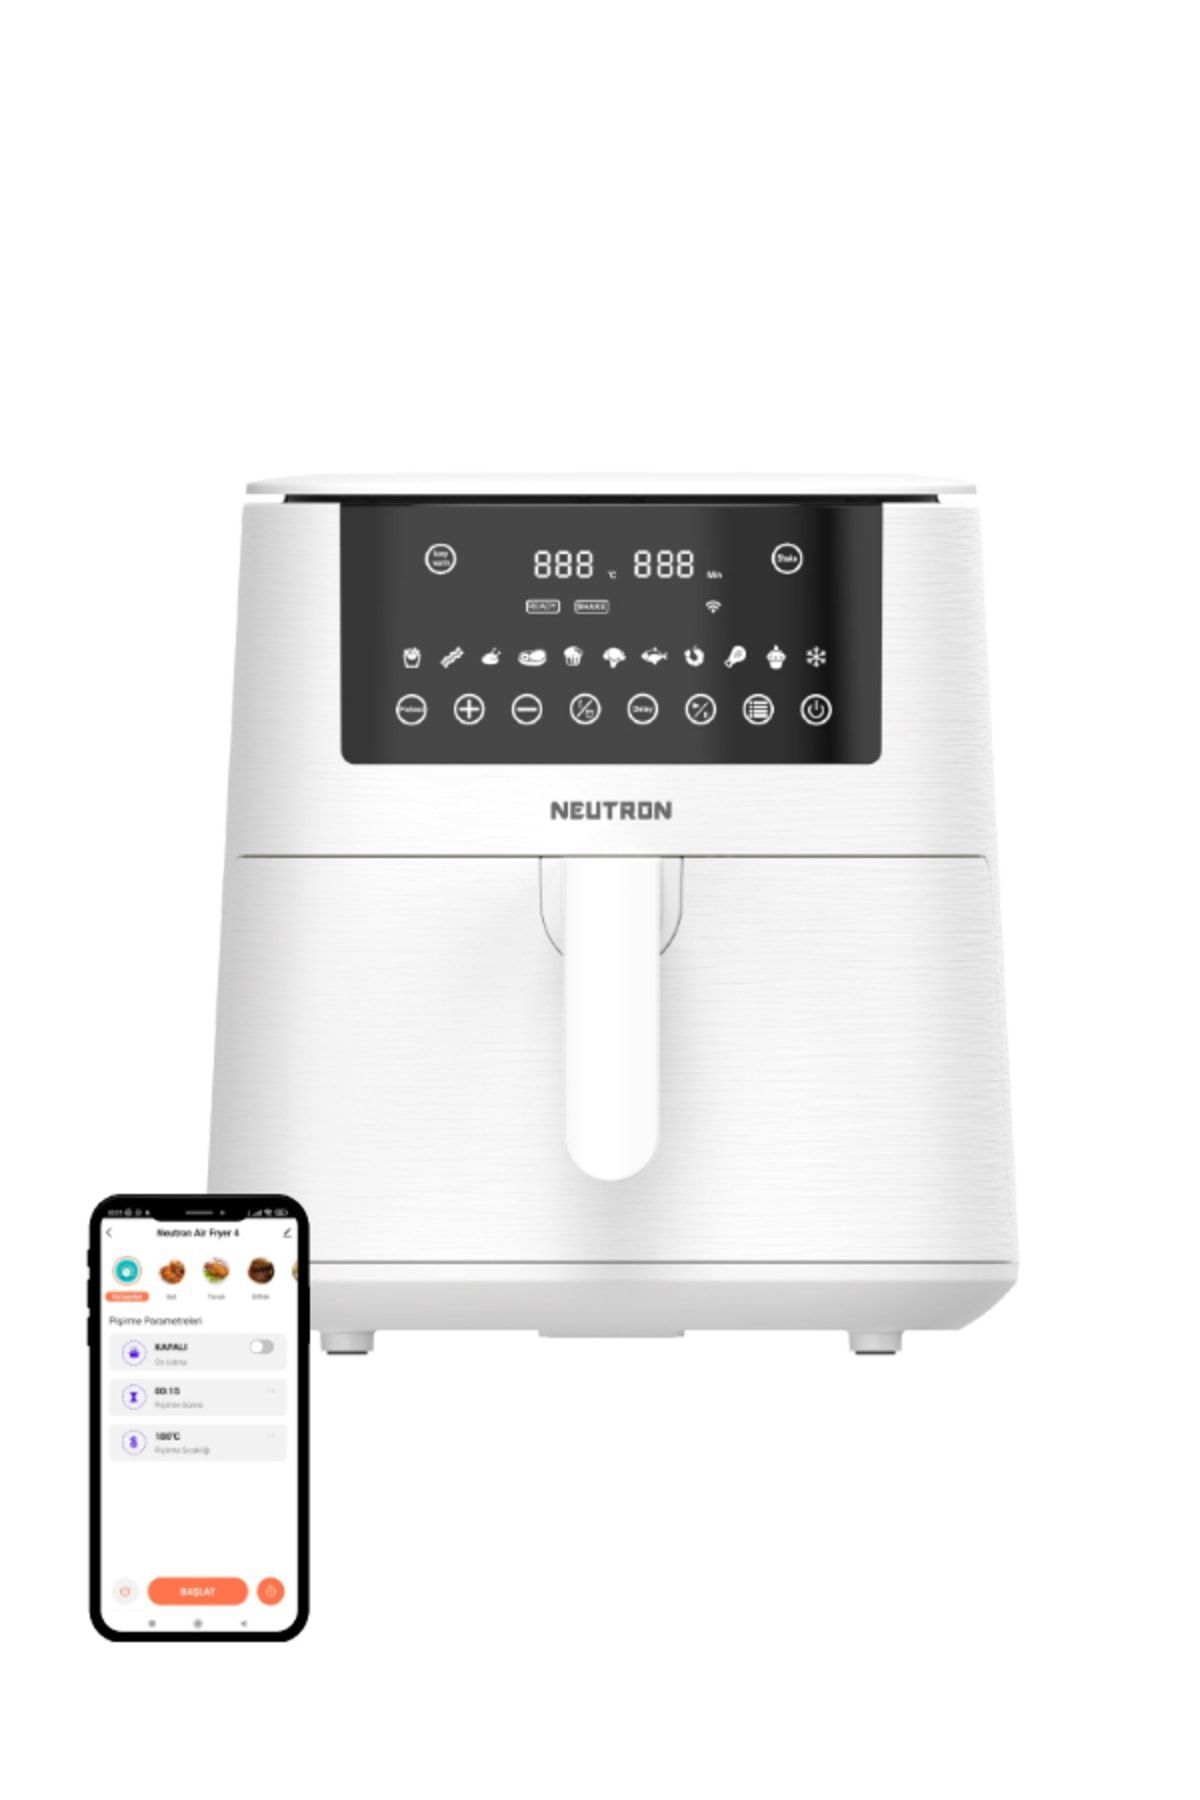 NEUTRON Smart Air Fryer Pro Akıllı Fritöz 7.3 Litre Xxl Air Fryer